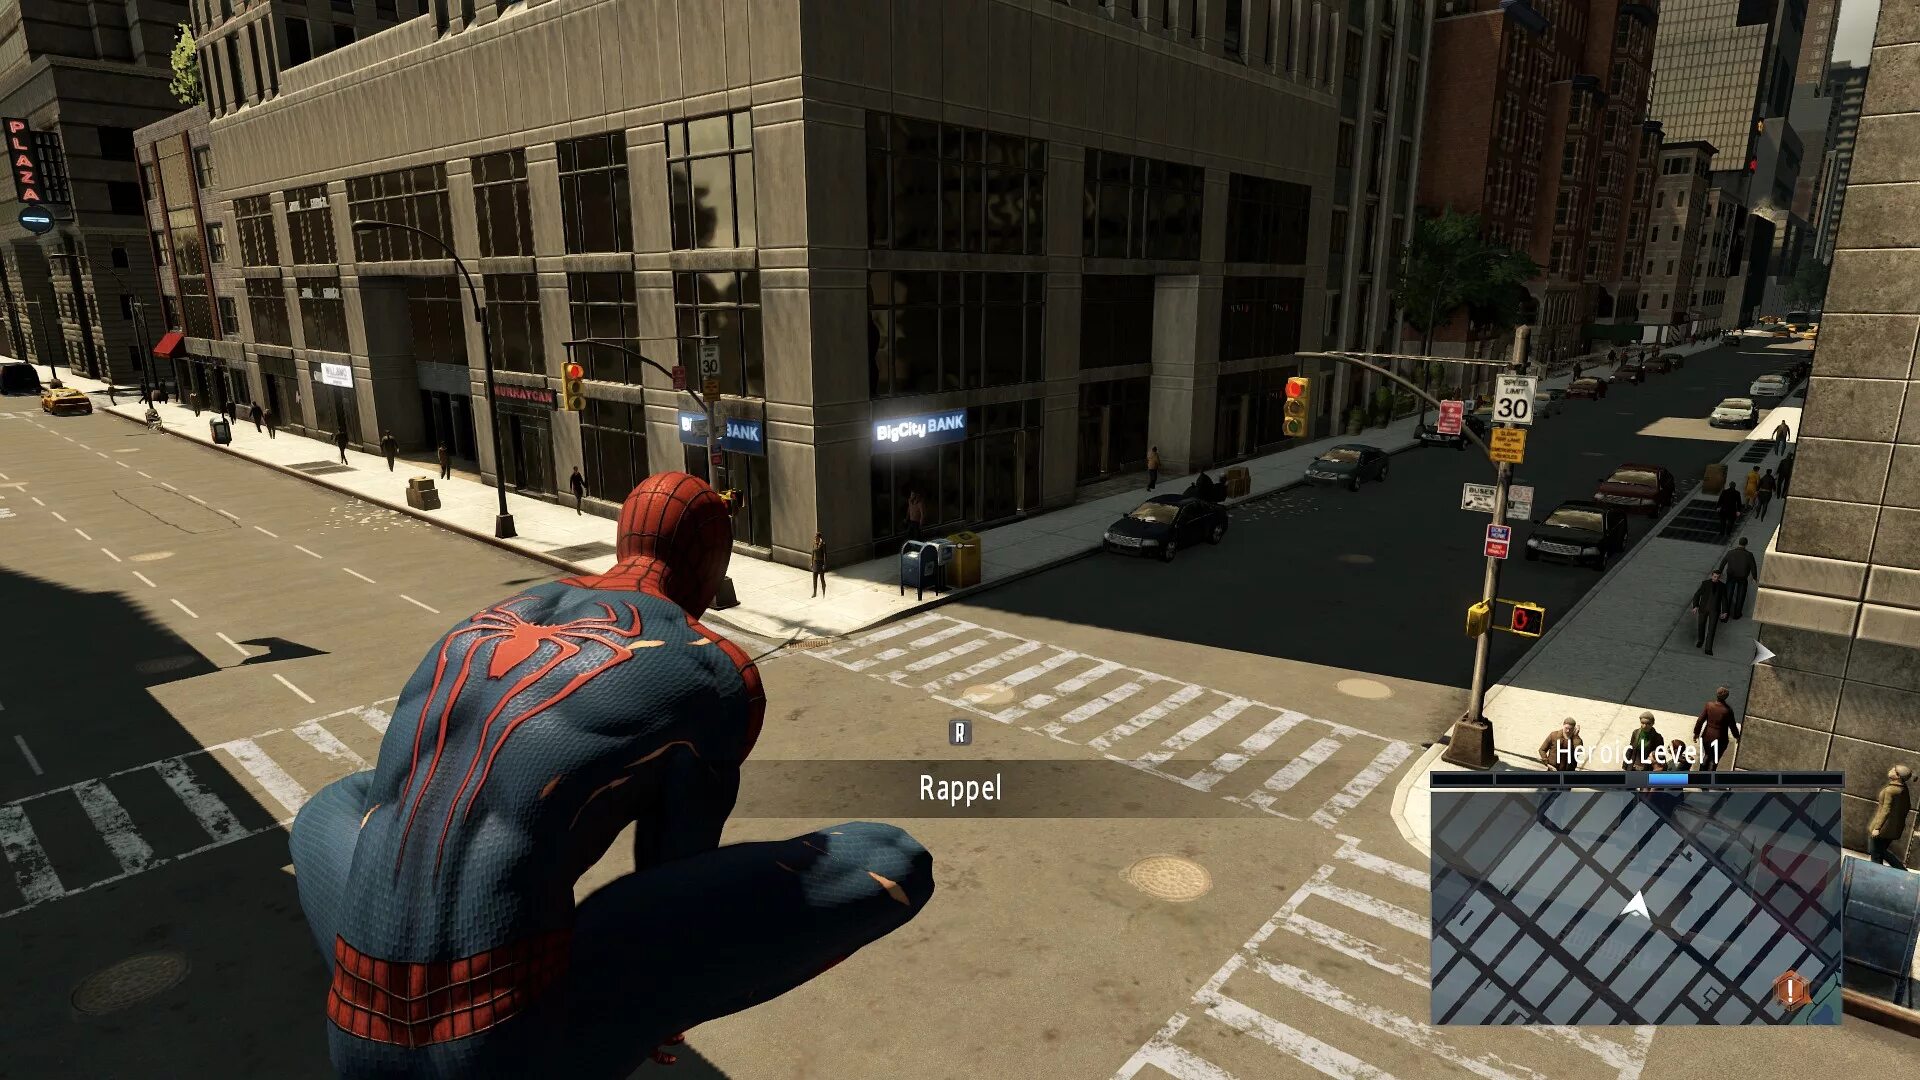 Эмэйзинг Спайдер Мэн 2. The amazing Spider-man 2 (игра, 2014). Человек паук амазинг 2 игра. Эмэйзинг Спайдер Мэн игра. Паук амазинг